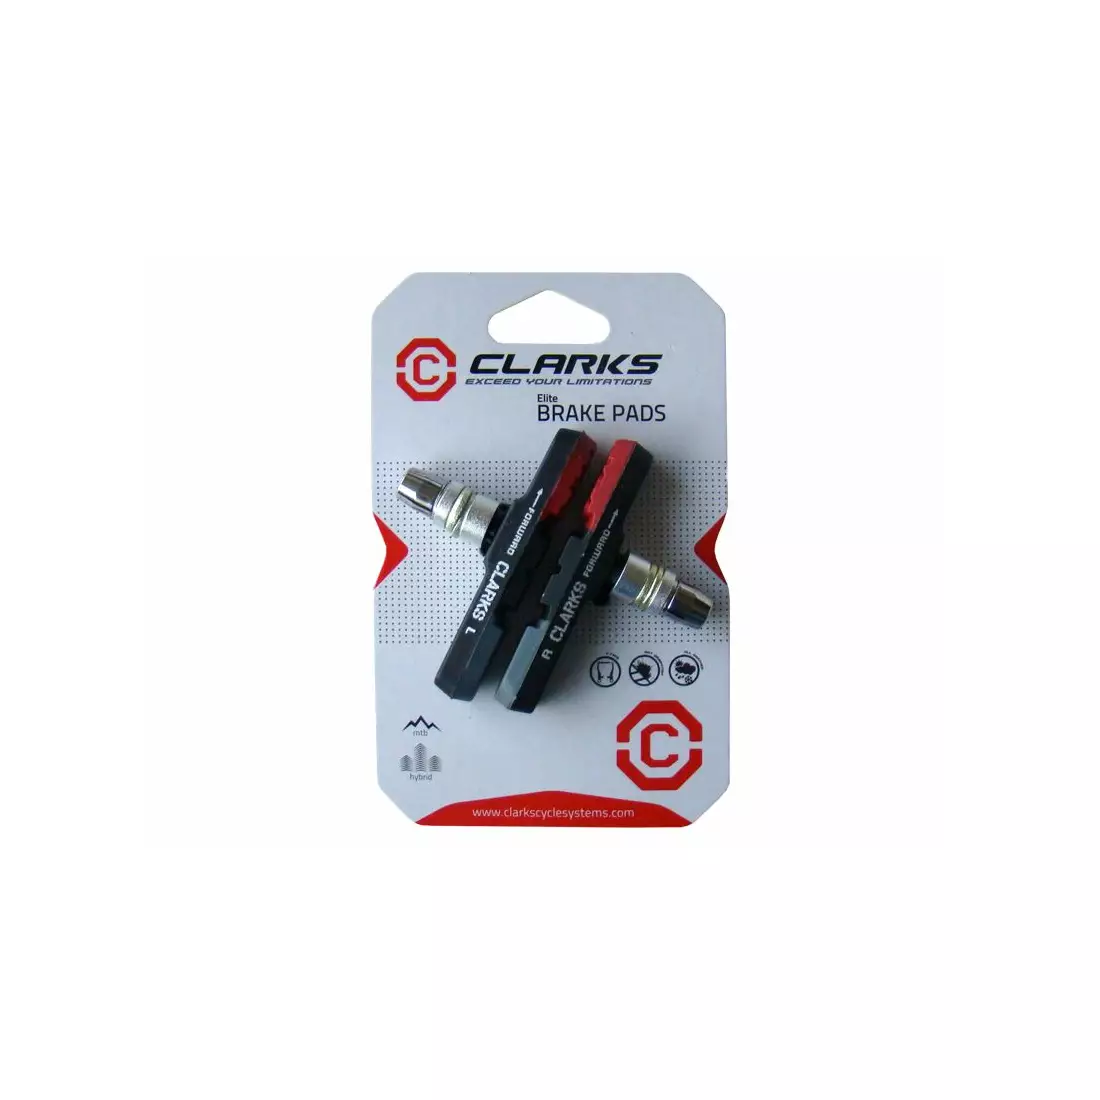 CLARKS CPS301 MTB Bremsbeläge für Bremsen V-brake, Rot-schwarz-grau